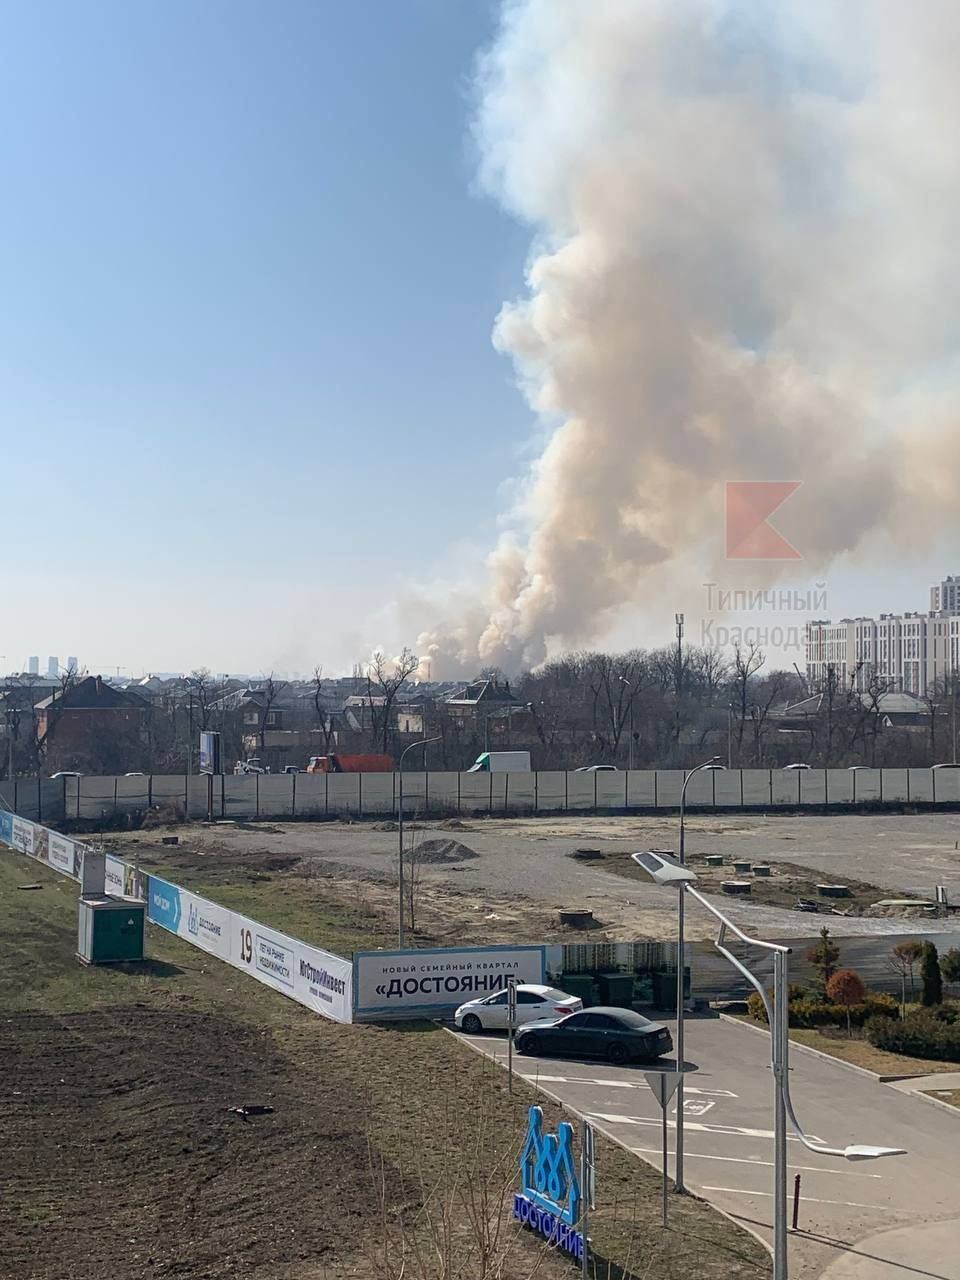 В Краснодаре возле авиационного училища пожар, жители говорят о взрывах: фото — фото